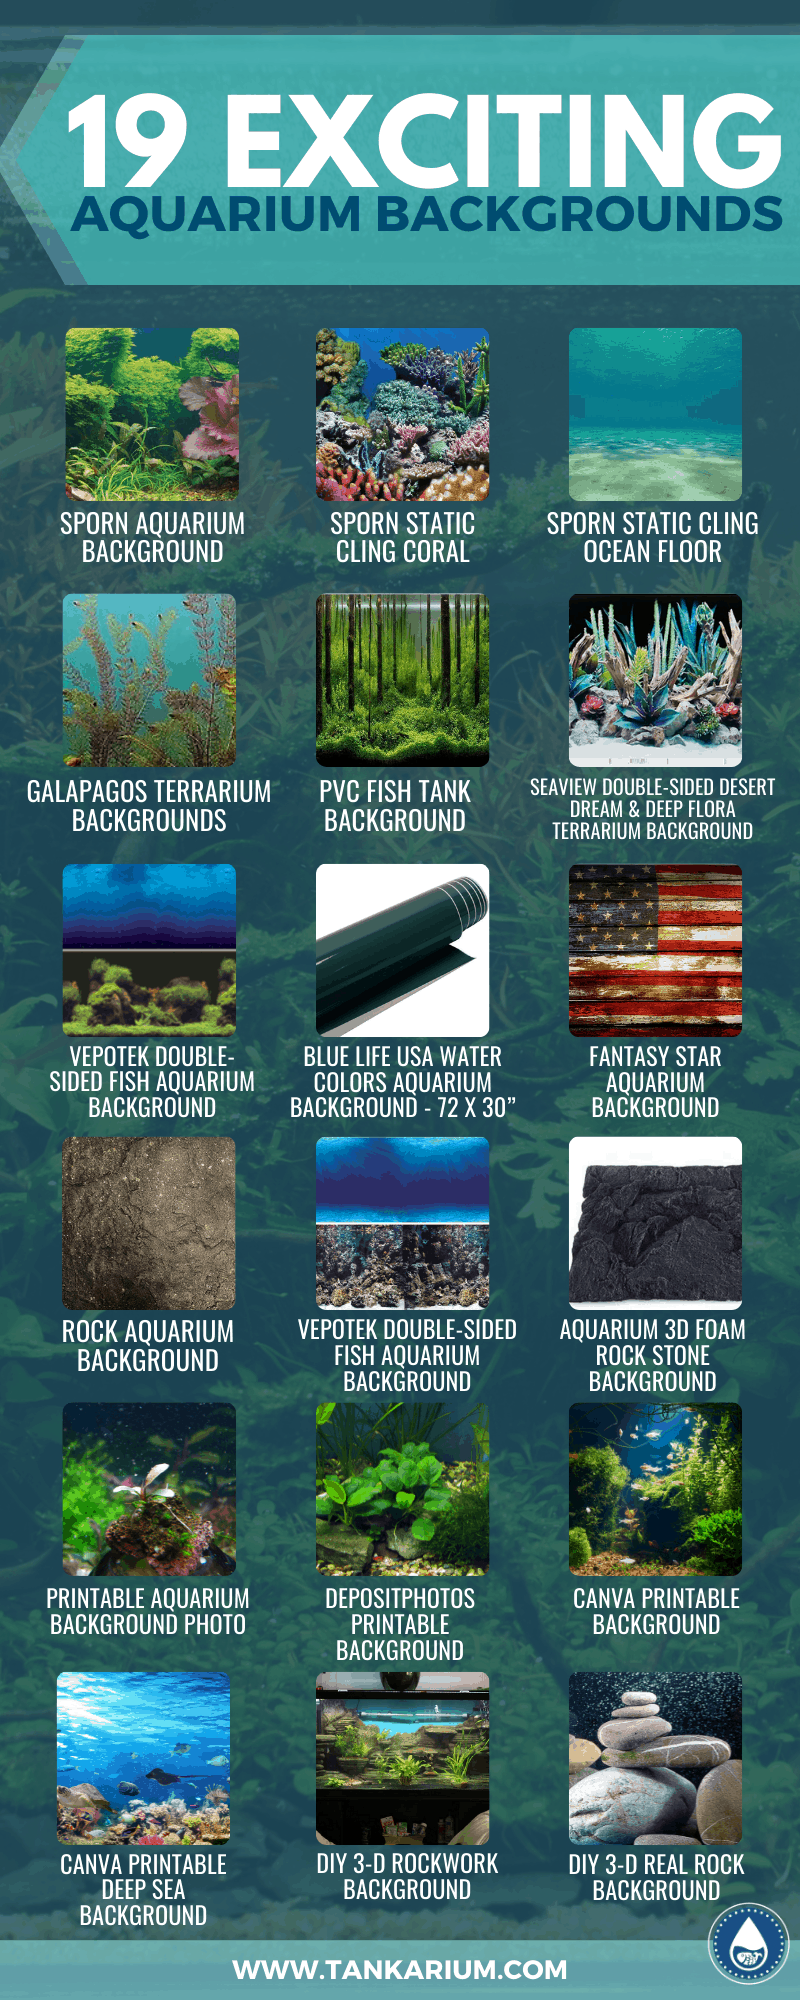 19 Exciting Aquarium Backgrounds - infographics